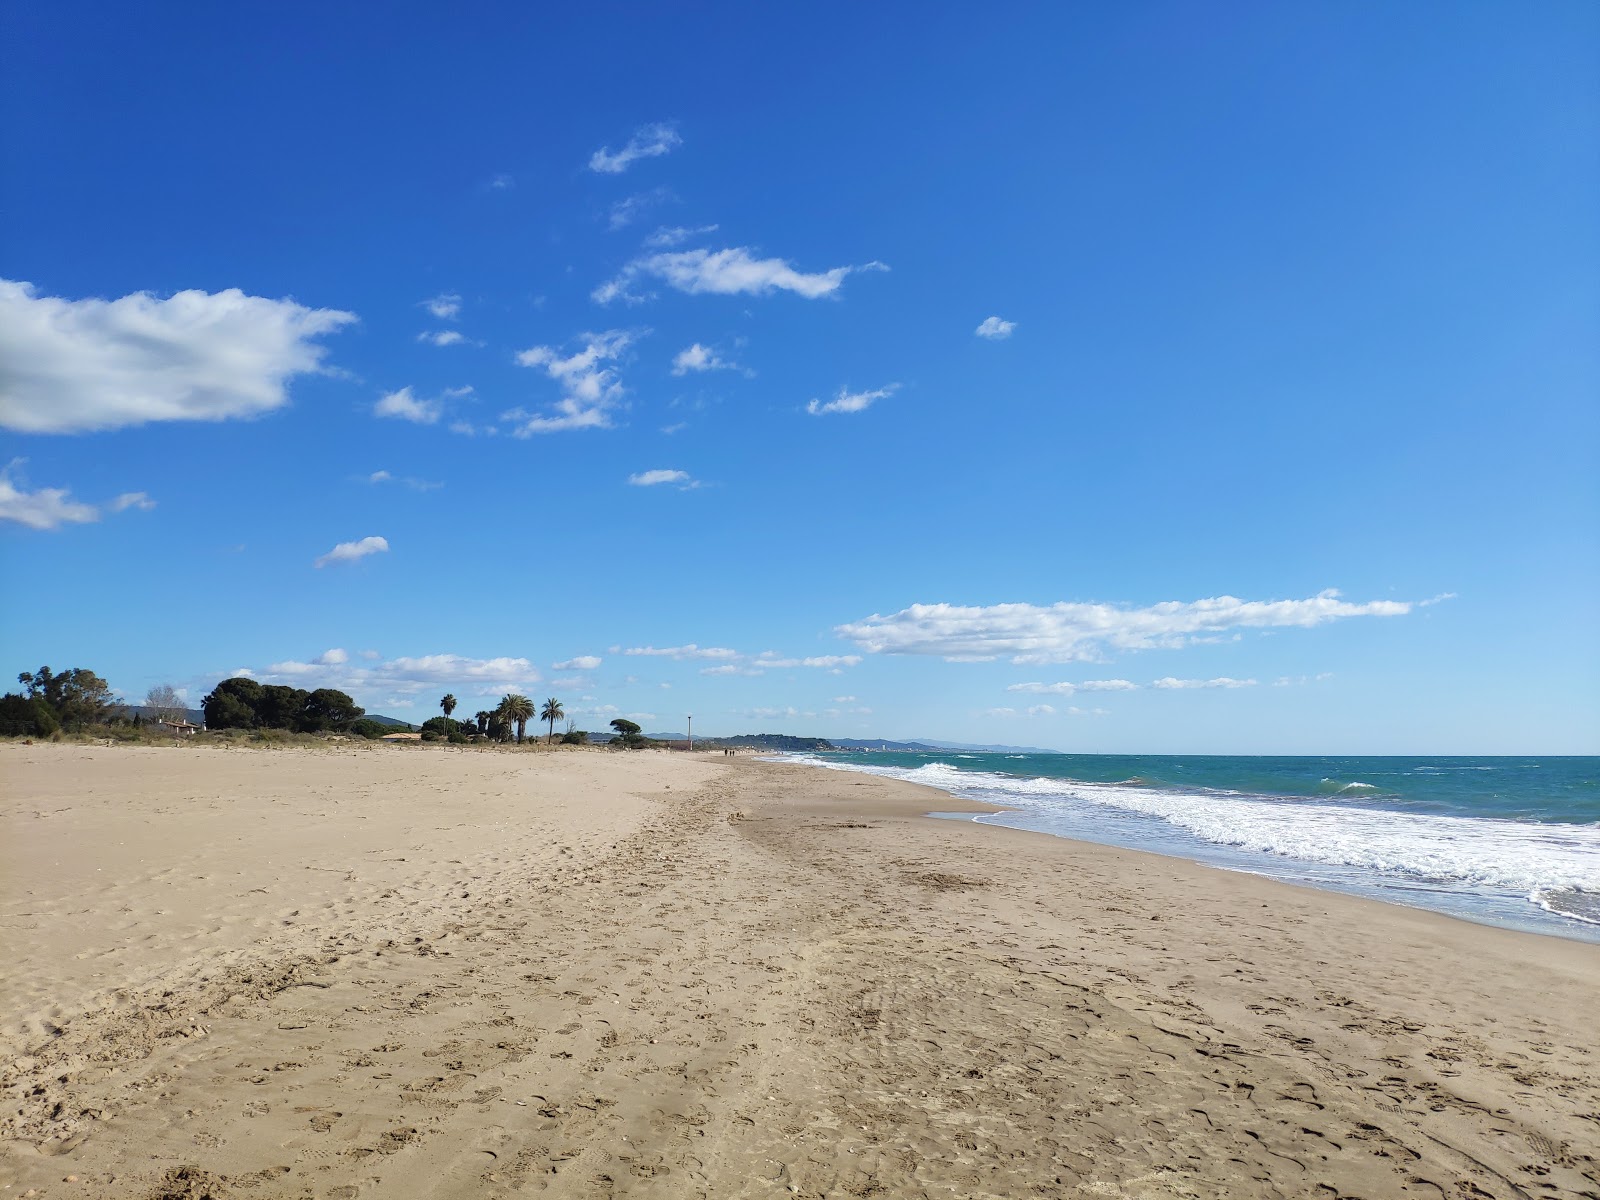 Valokuva Playa Torredembarraista. pinnalla ruskea hiekka:n kanssa